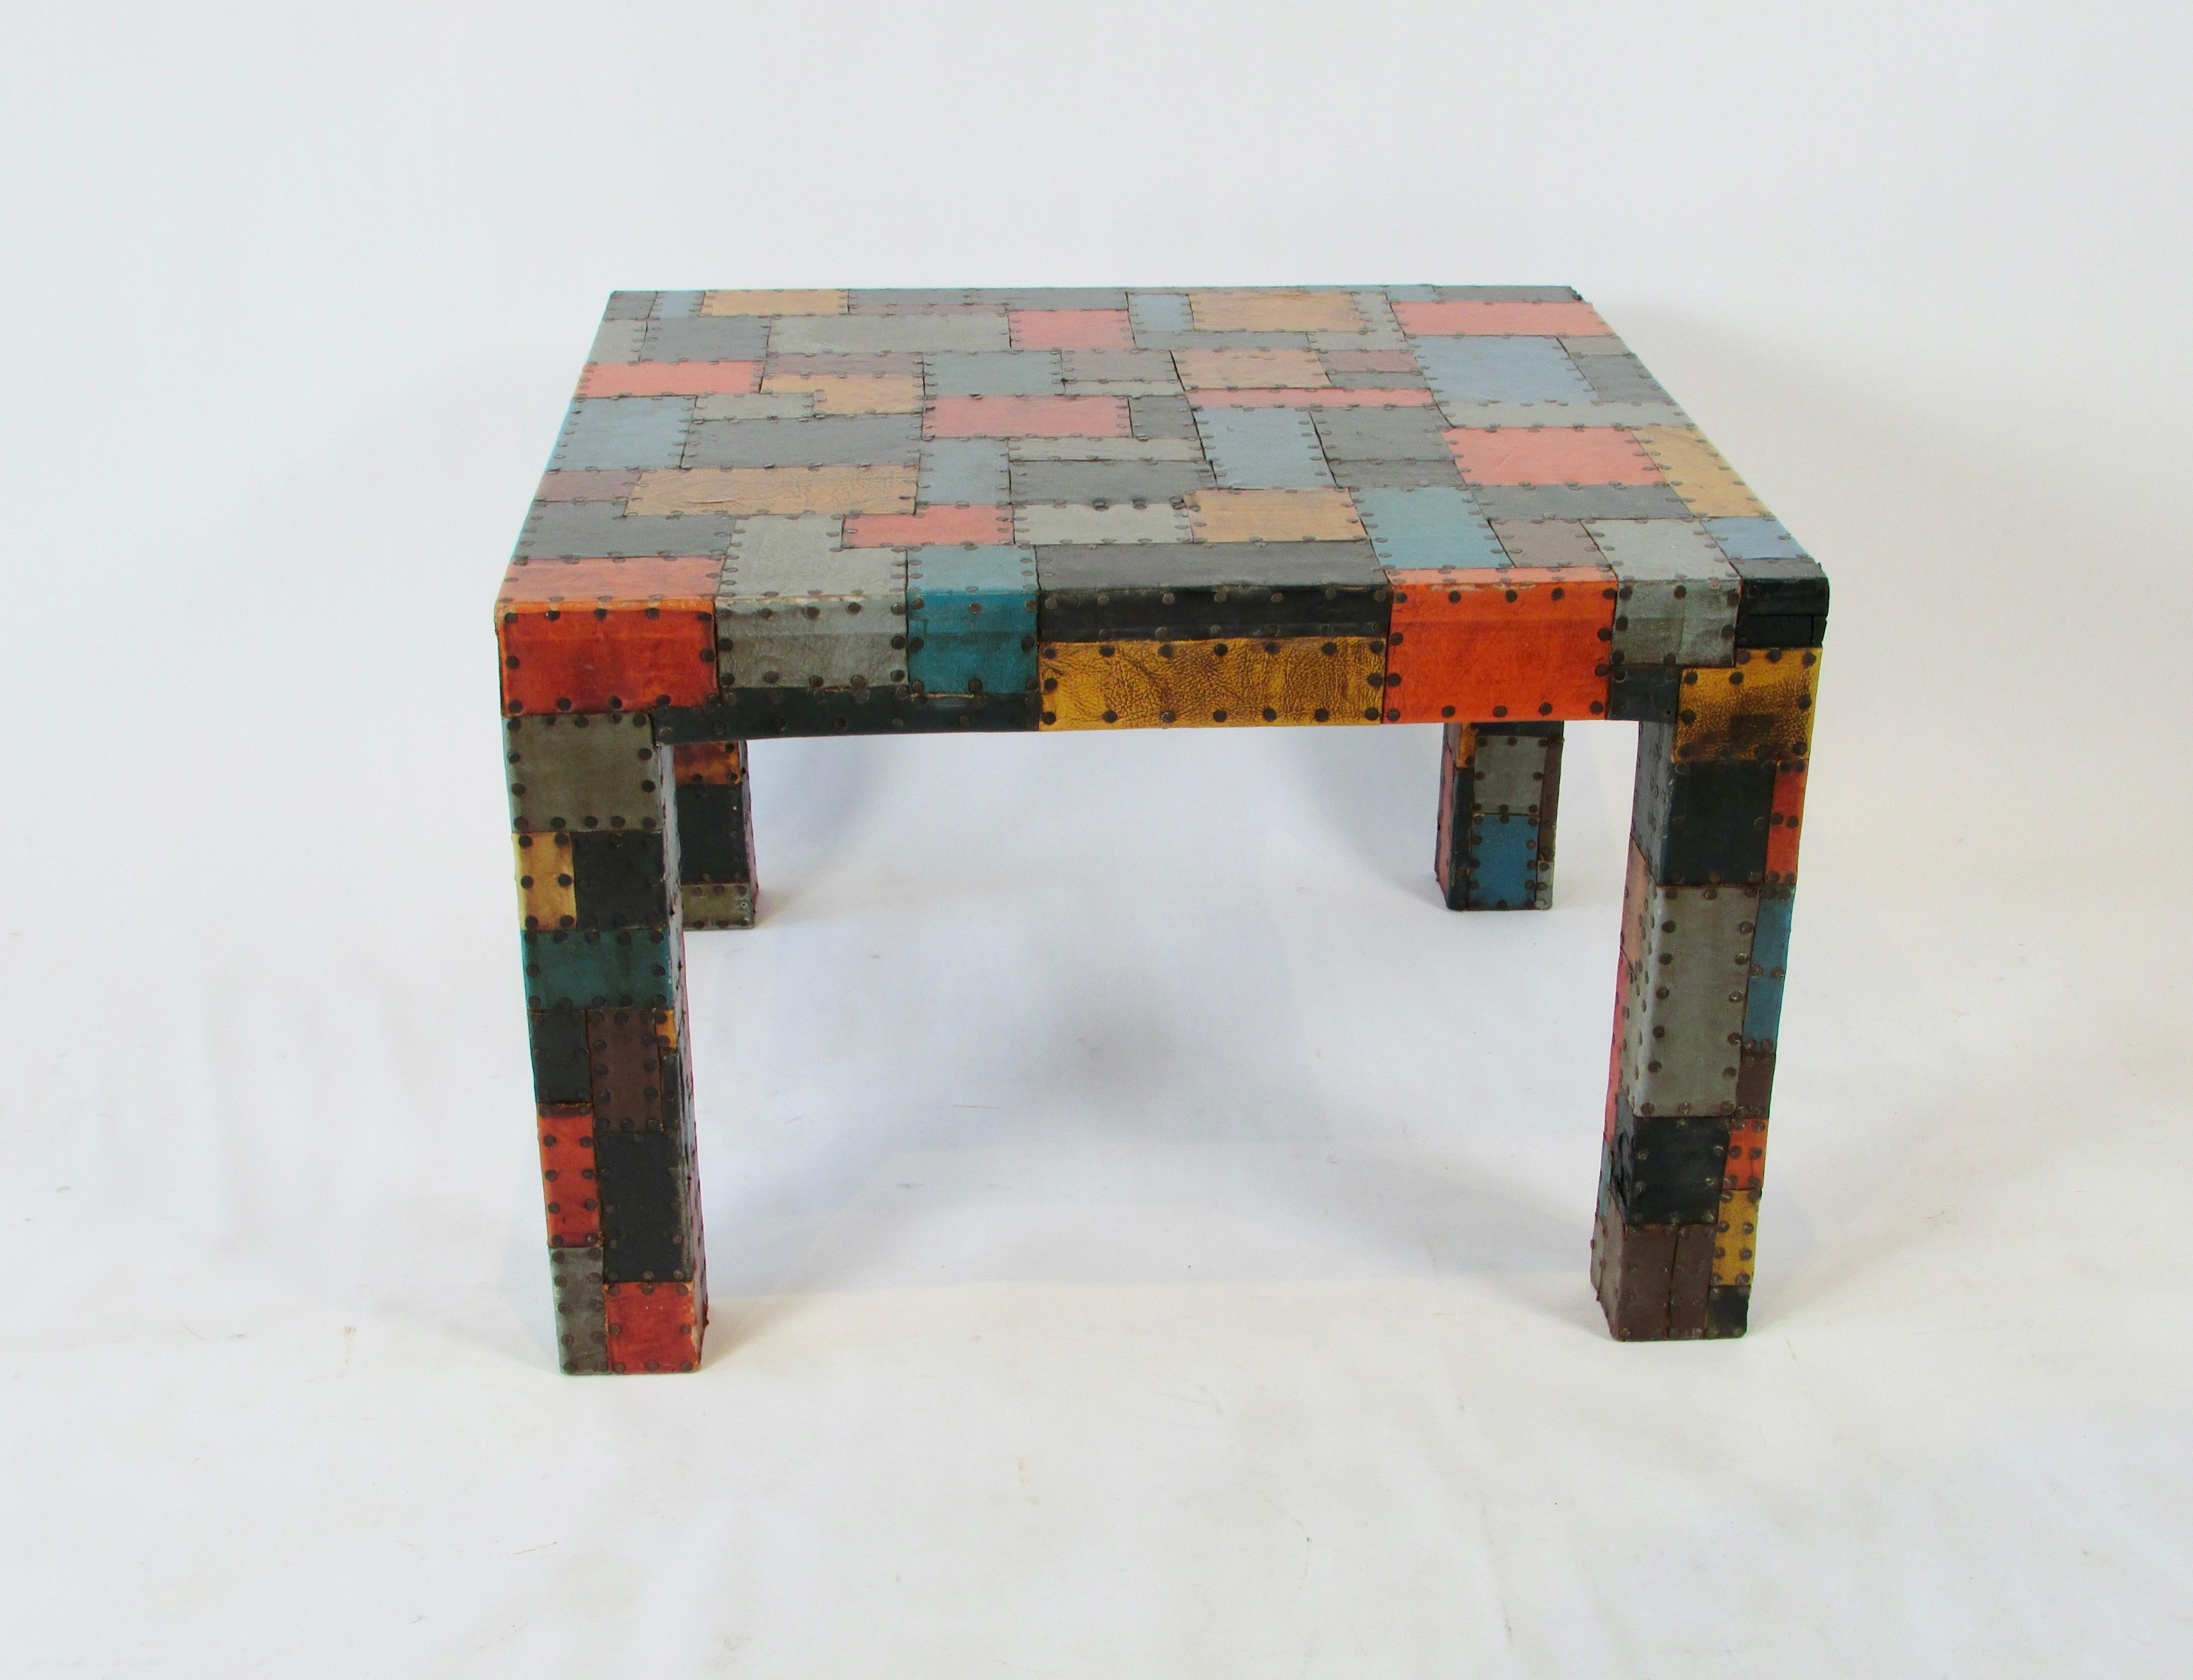 Table de style Parsons d'art populaire joliment exécutée. Recouvert de pièces carrées en cuir de taille et de couleur variables, avec un motif géométrique. Belle échelle et couleurs joliment assorties. Chaque pièce est martelée à la structure de la